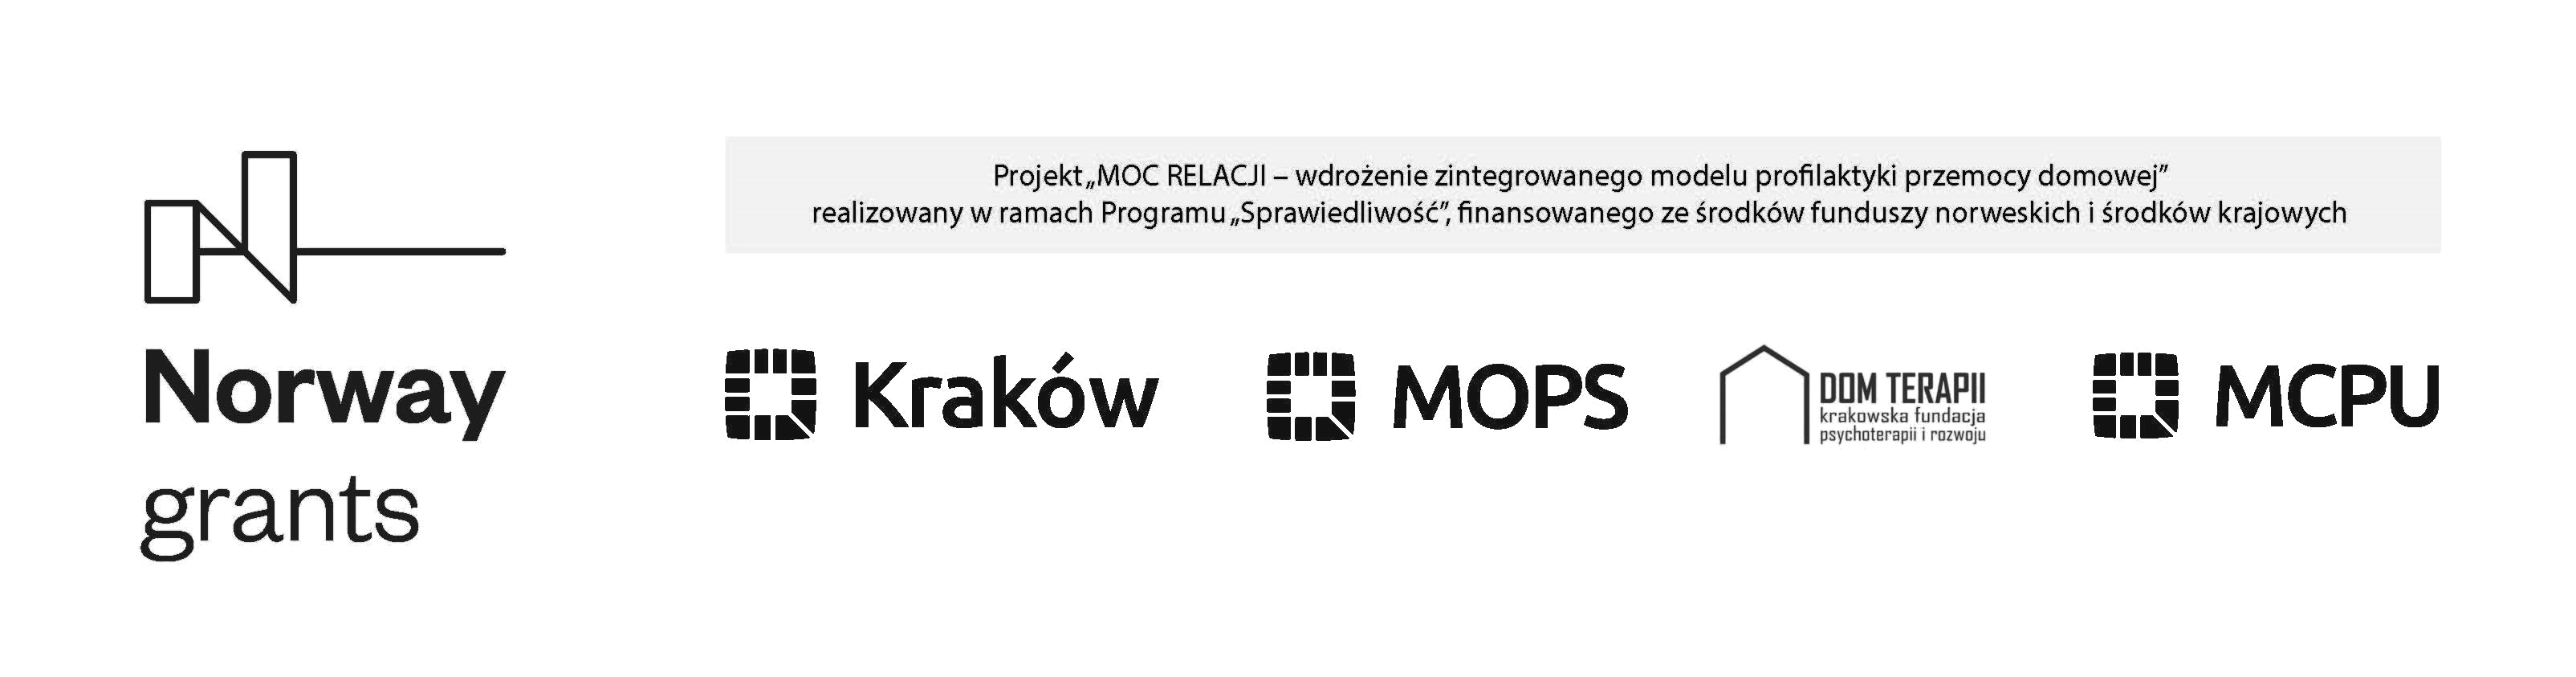 Logotyp  projektu Moc relacji